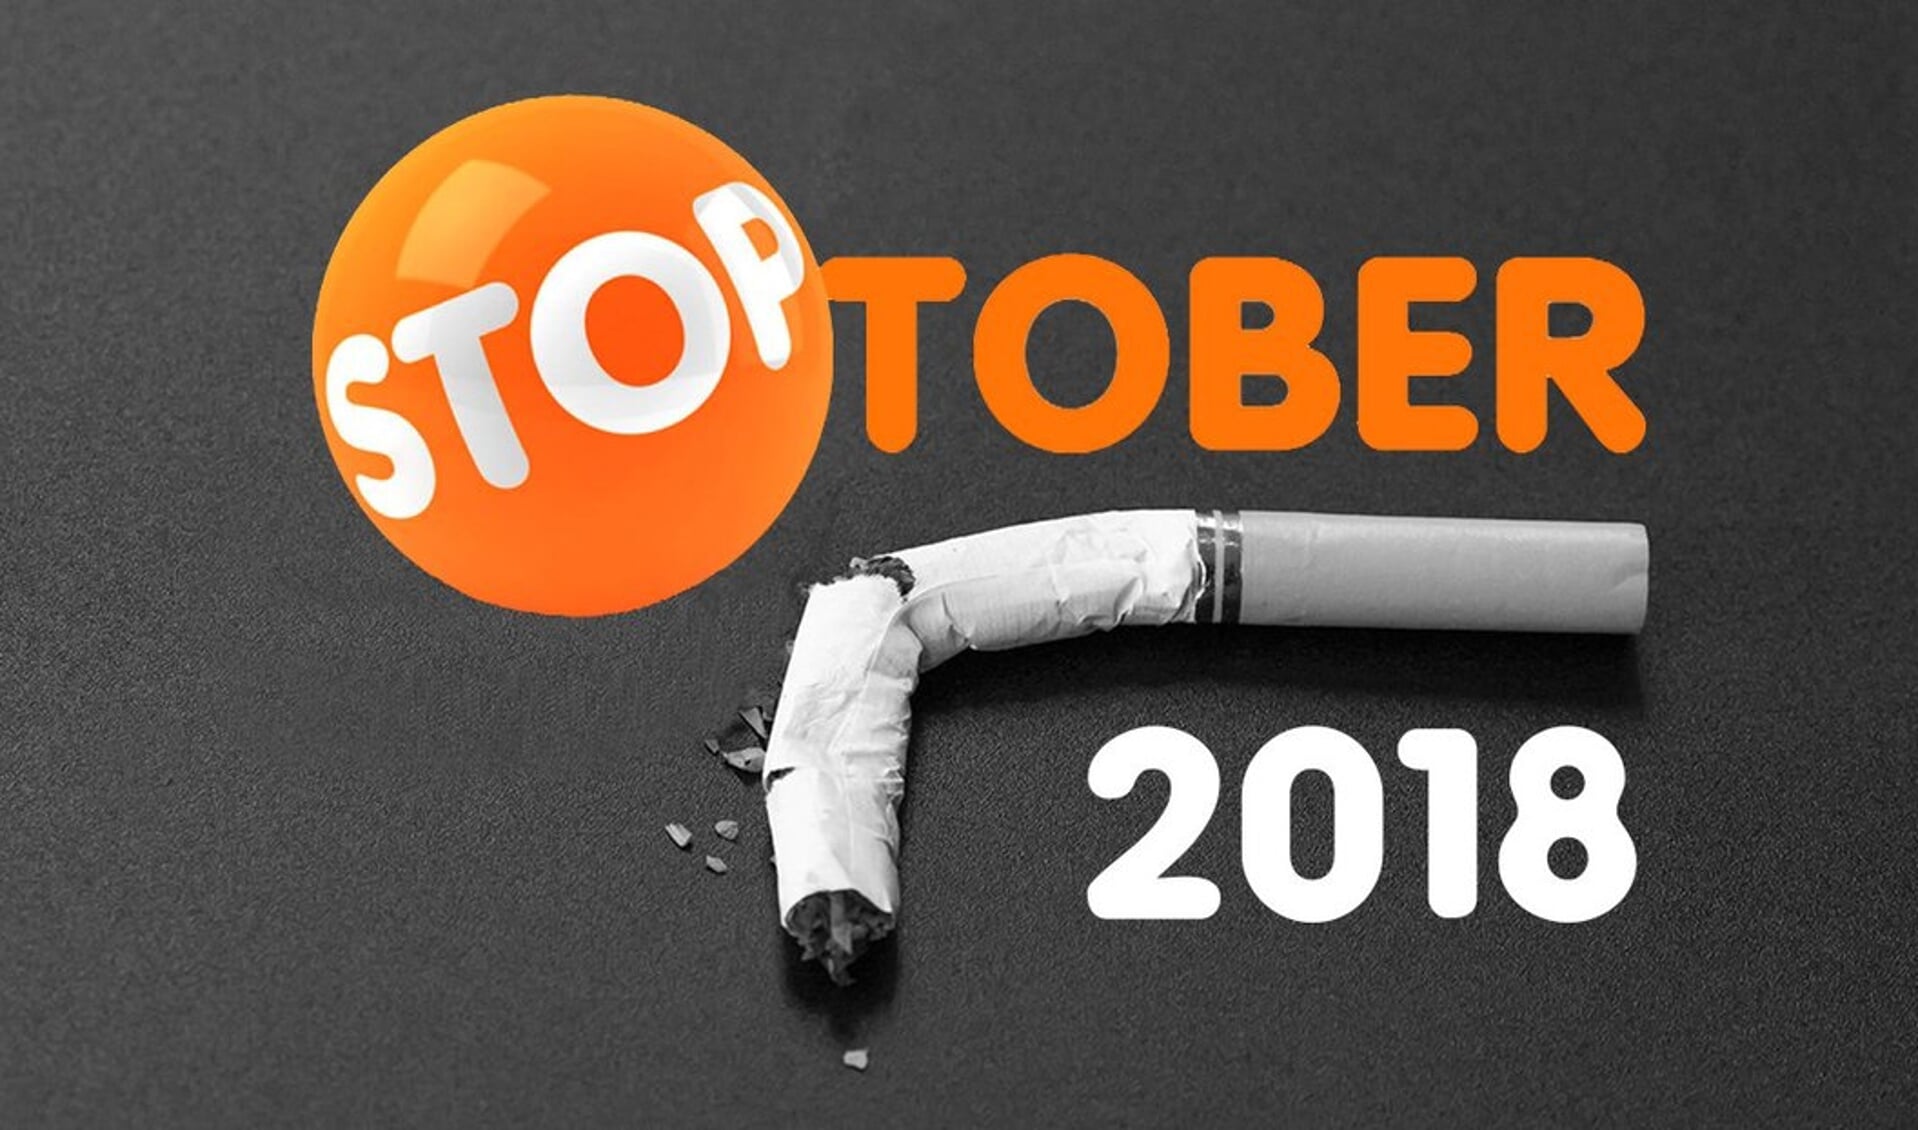 Stoptober? Met z’n allen 28 dagen stoppen met roken in oktober.  Met dit logo wordt in de media aandacht gevraagd voor de campagne.